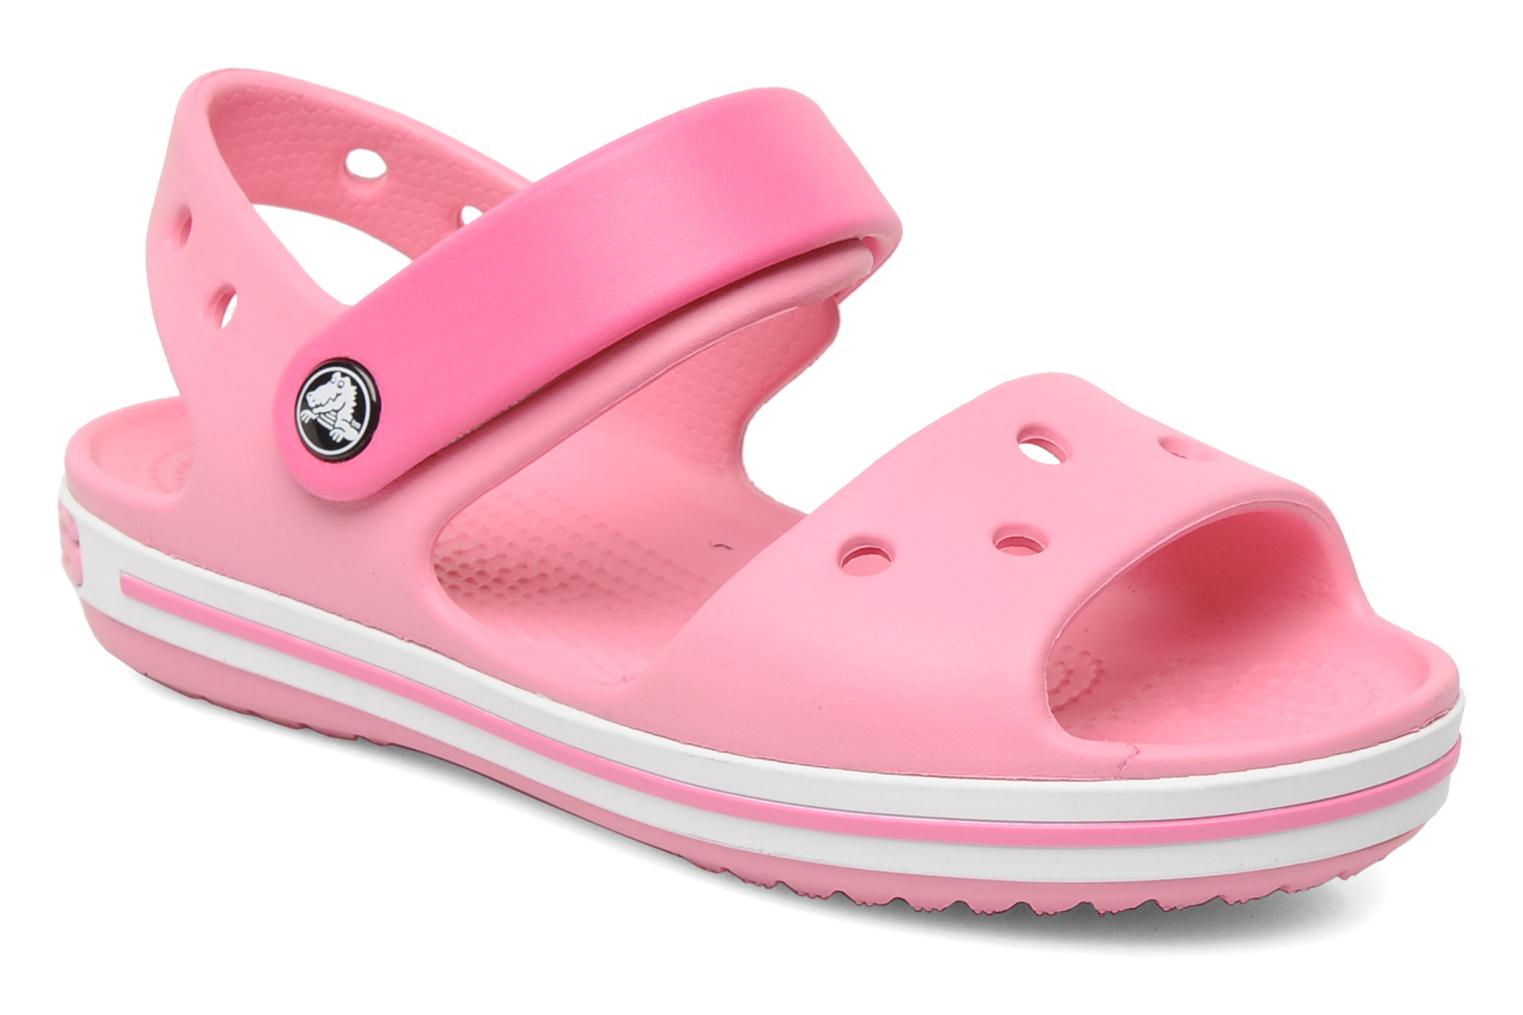 Crocs Crocband Sandal Kids Sandals in Pink at Sarenza.co.uk (122661)